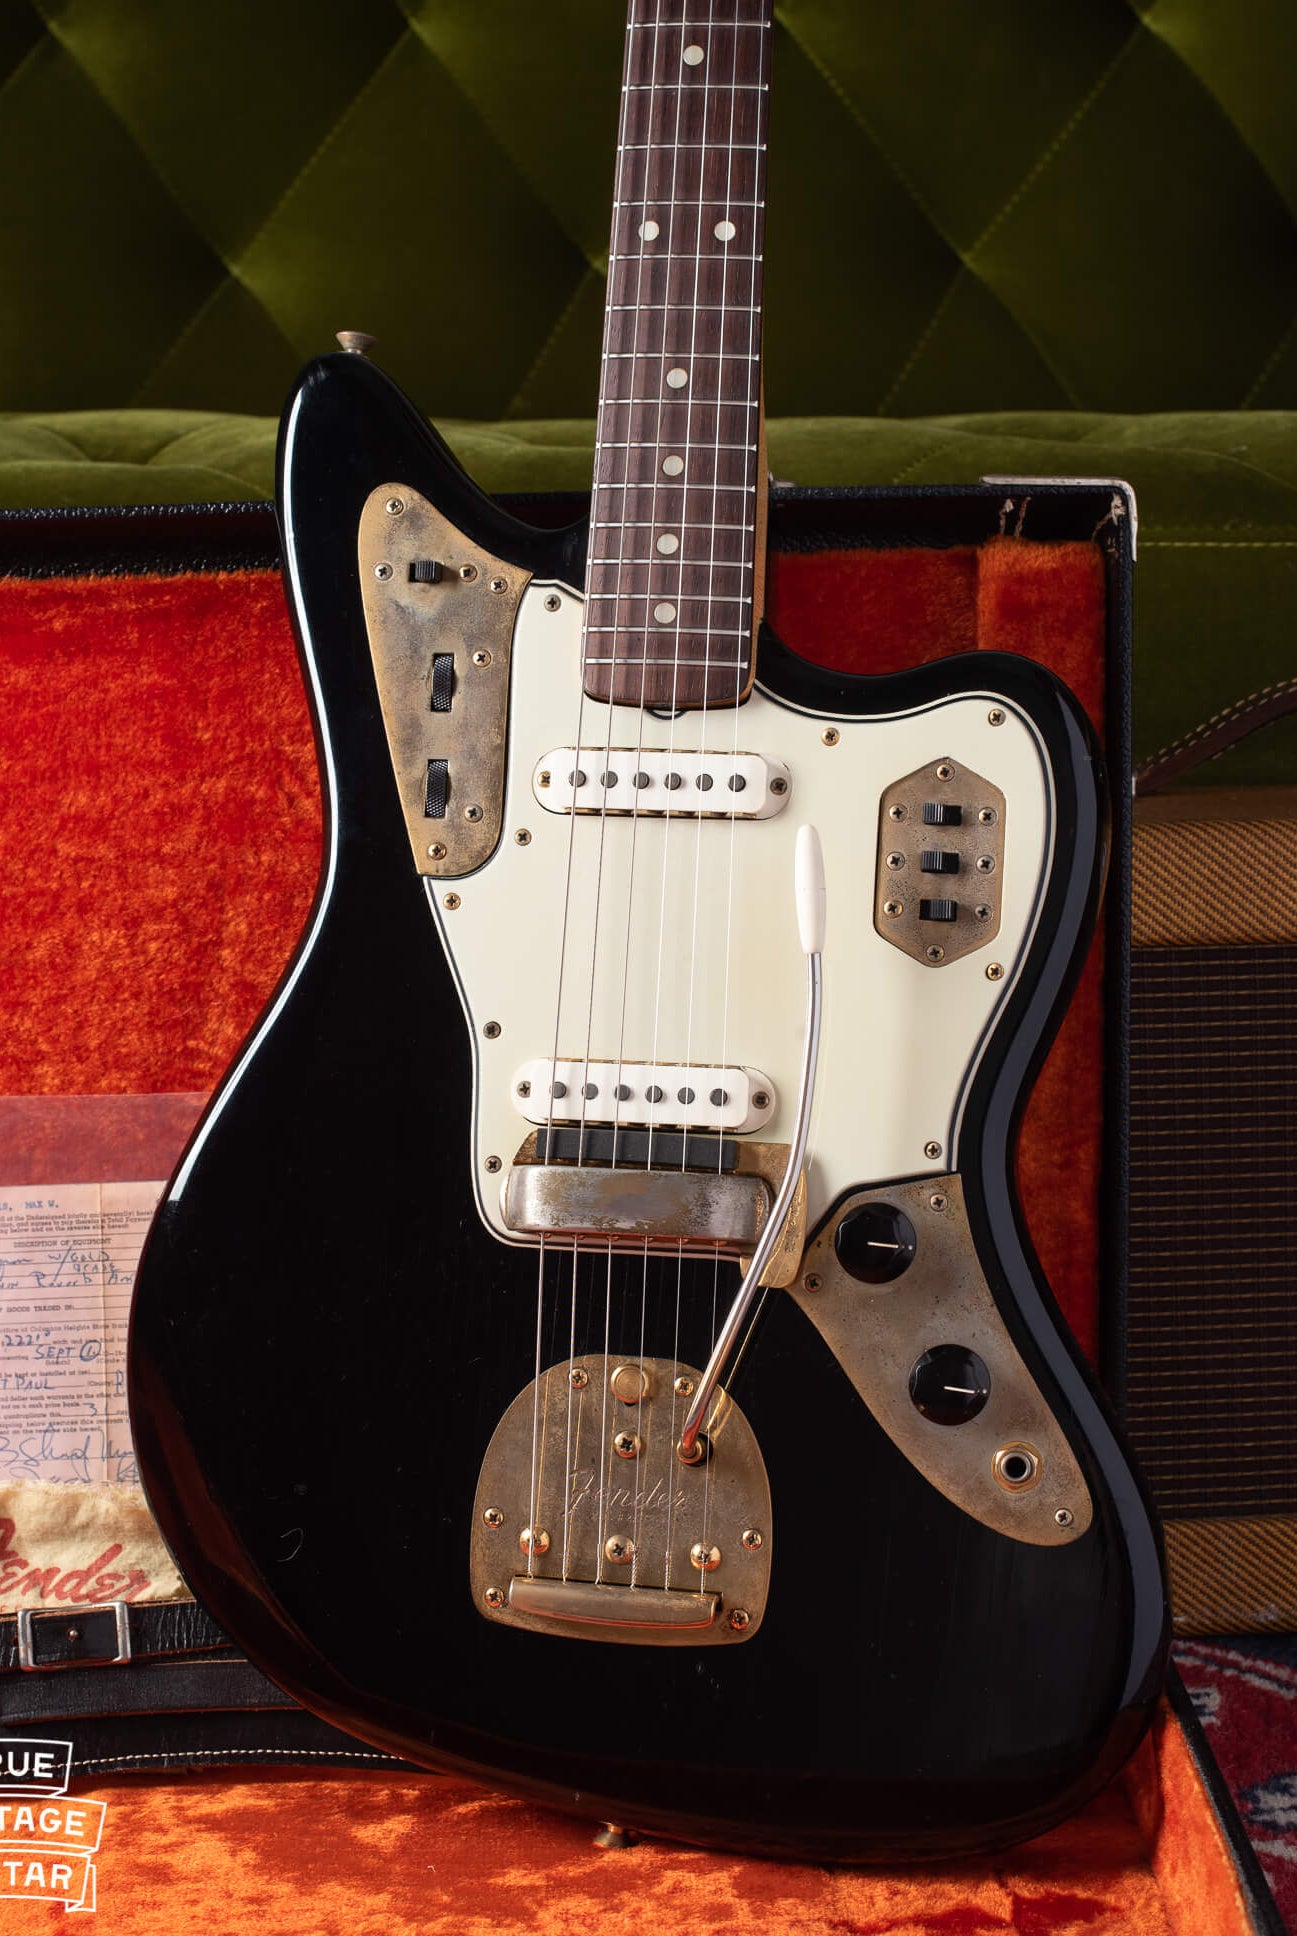 Vintage Fender guitars with gold hardware or gold parts. 1960s Fender Jazzmaster and Jaguar guitars.